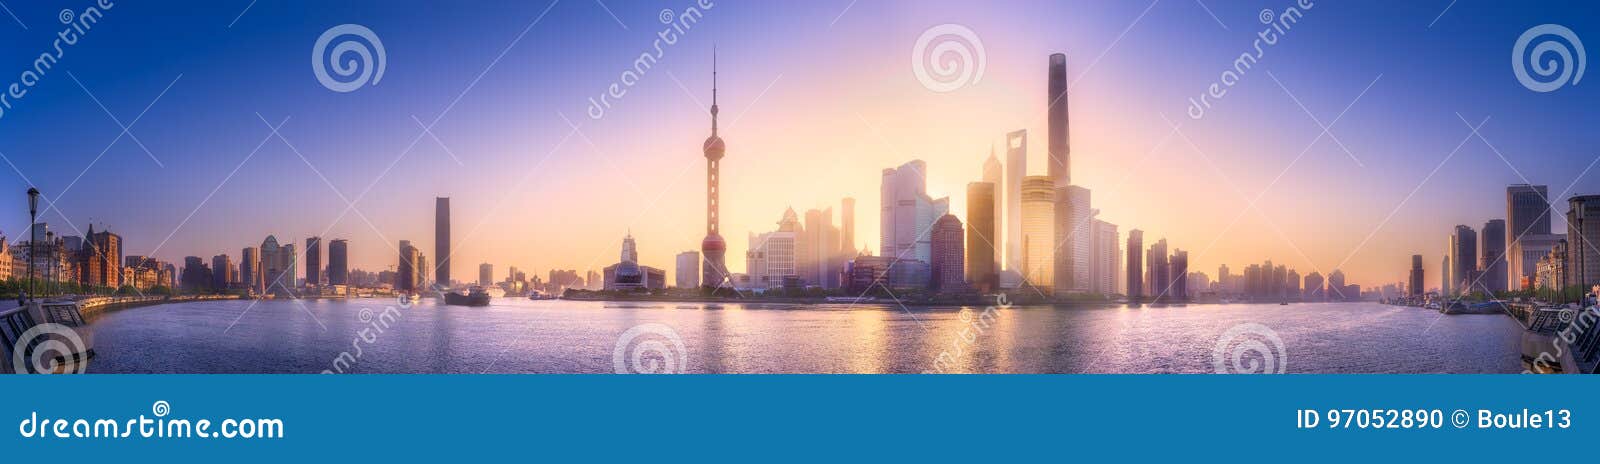 shanghai skyline cityscape